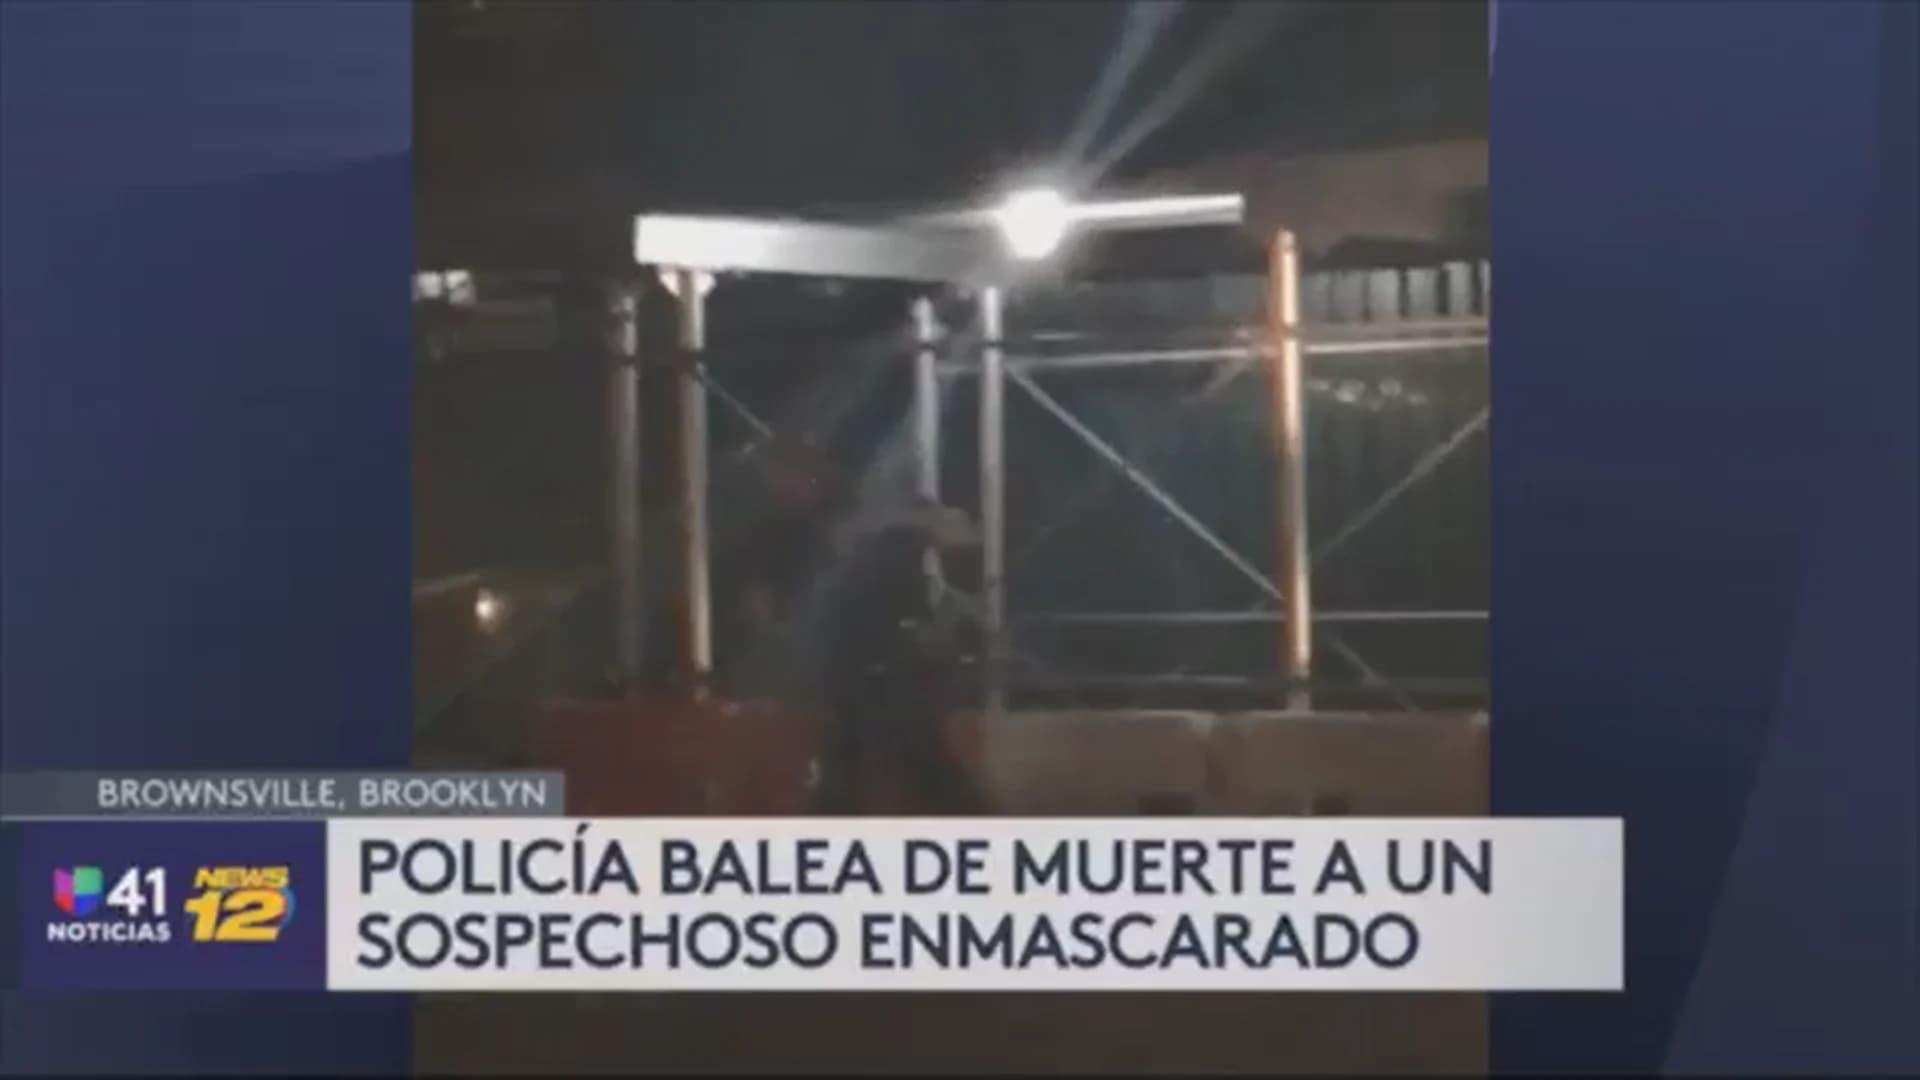 Univision 41 News Brief: Policía balea a sospechoso enmascarado quien luego murió en el hospital